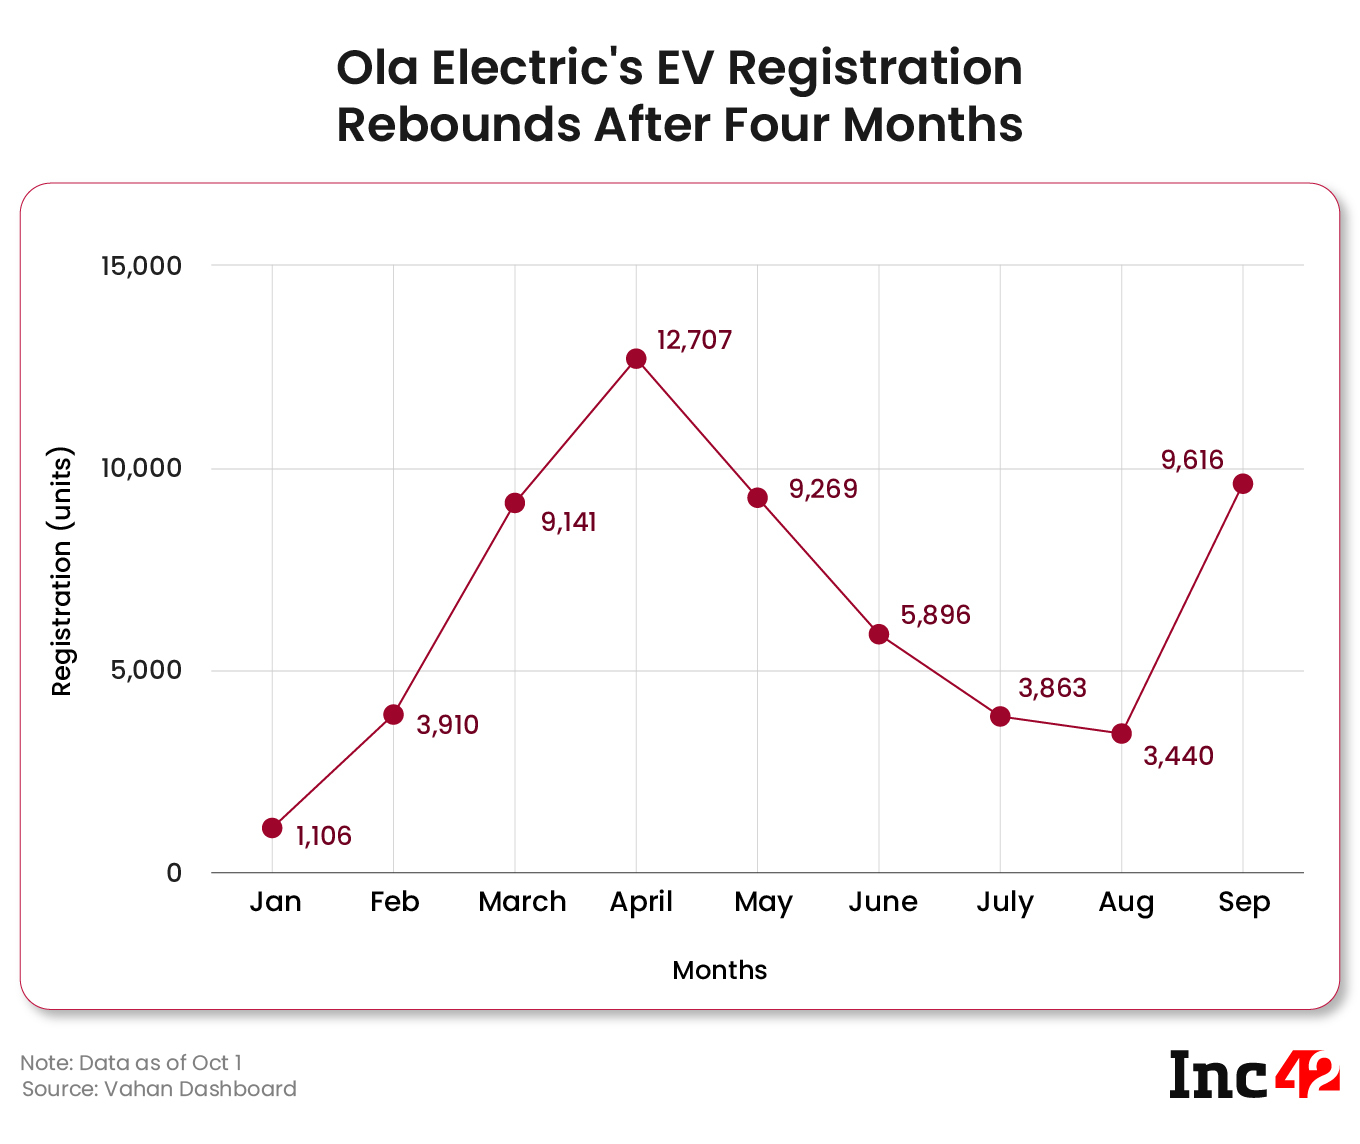 Ola Electric’s EV Registration Rebounds After Four Months